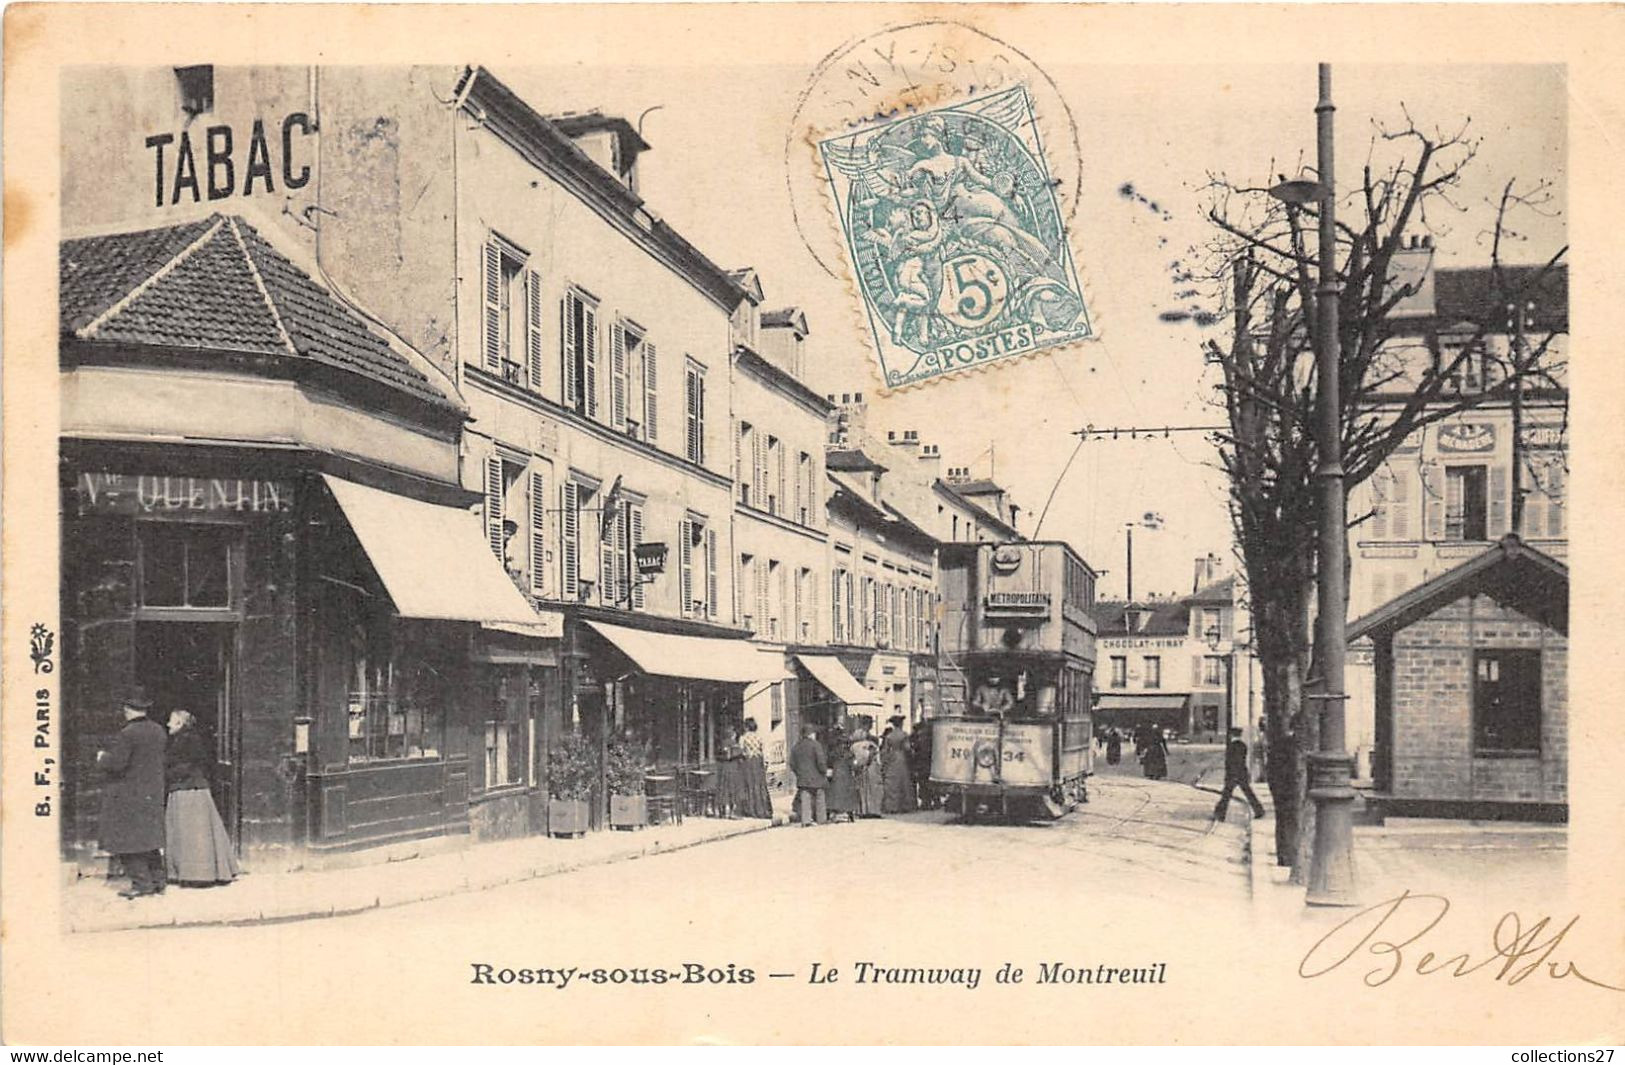 93-ROSNY-SOUS-BOIS- LE TRAMWAY DE MONTREUIL - Rosny Sous Bois